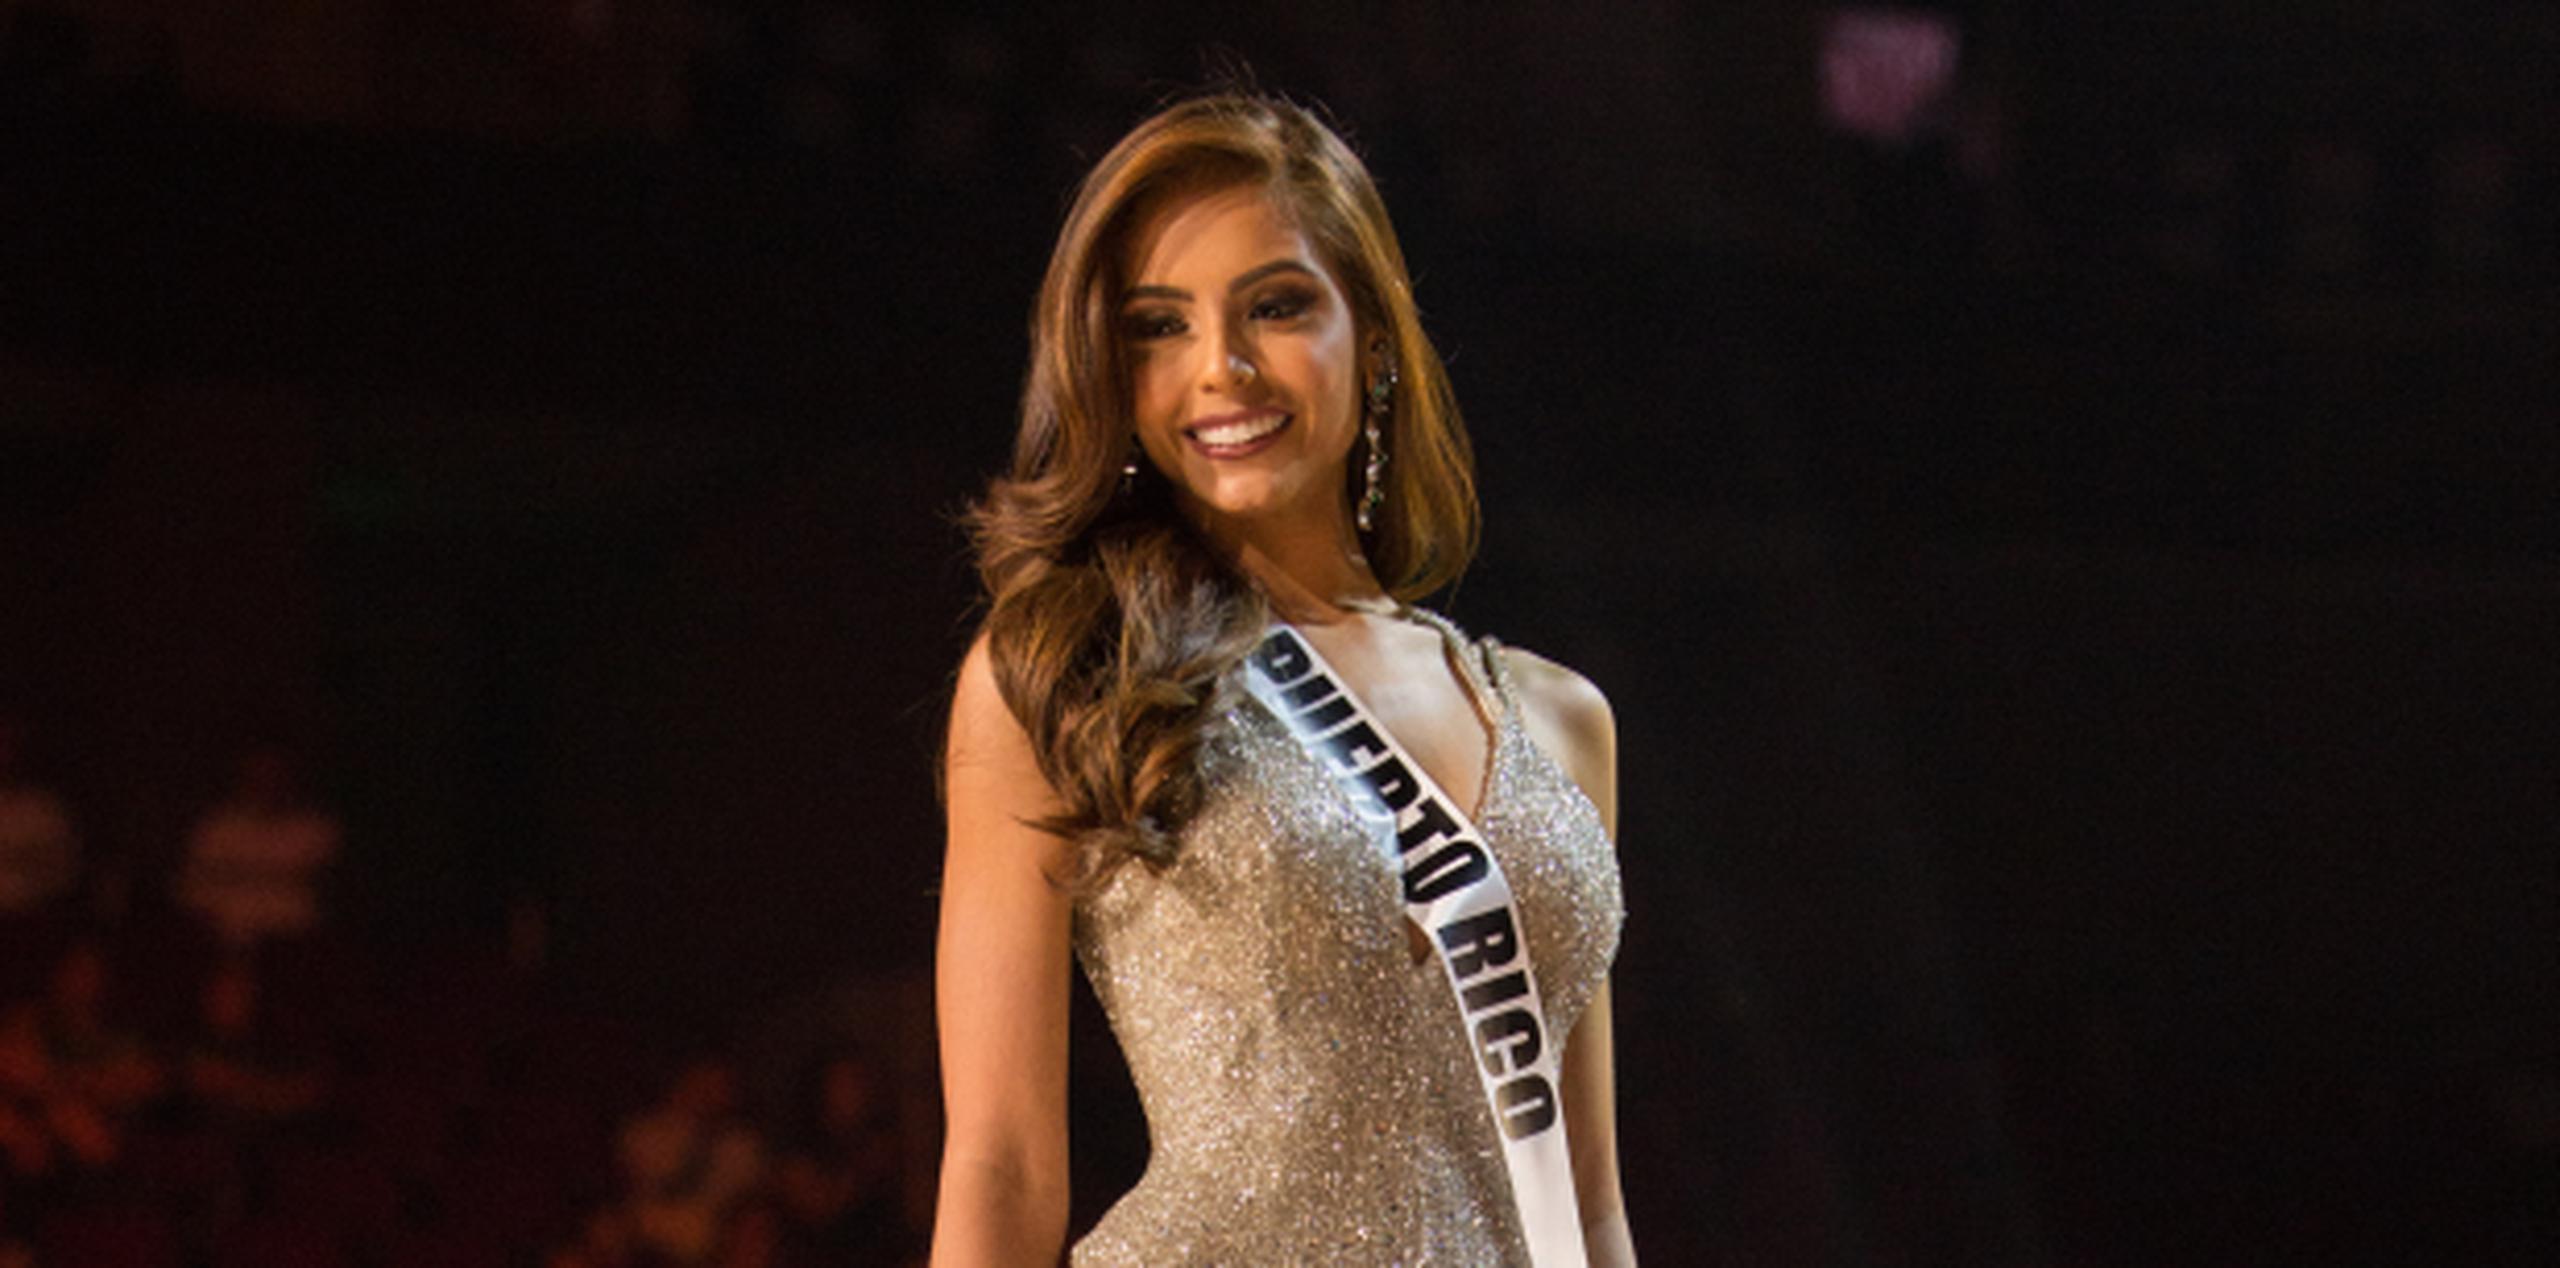 Mañana, la puertorriqueña Brenda Azaria Jiménez se enfrentará a 85 jóvenes de todo el mundo por la corona de Miss Universe. (Foto/Suministrada)